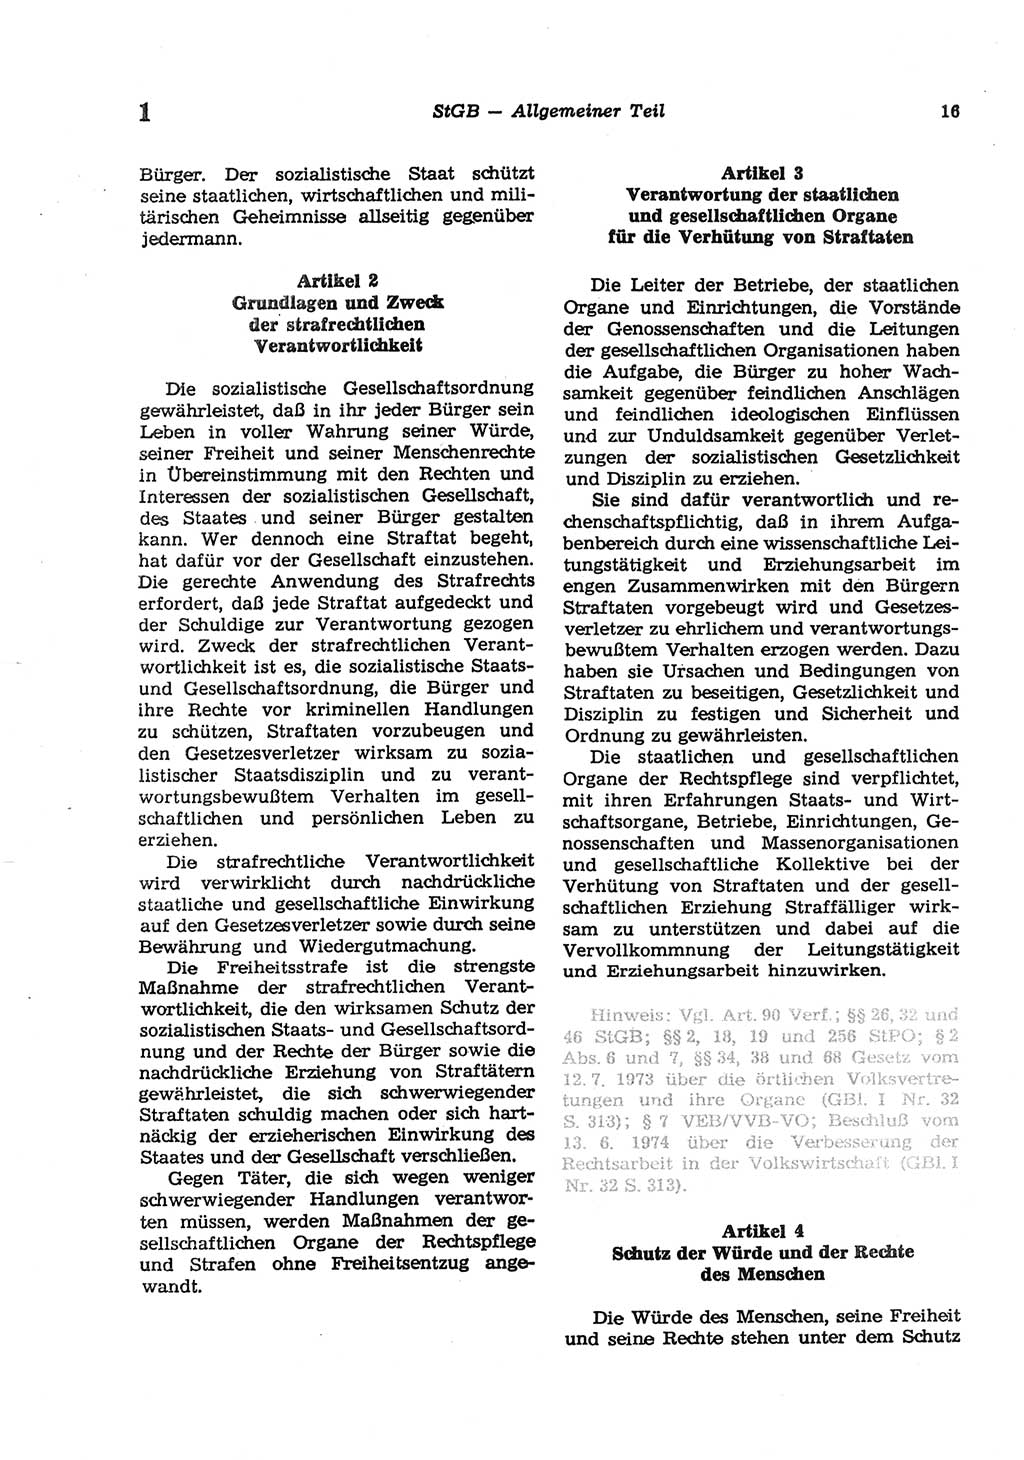 Strafgesetzbuch (StGB) der Deutschen Demokratischen Republik (DDR) und angrenzende Gesetze und Bestimmungen 1977, Seite 16 (StGB DDR Ges. Best. 1977, S. 16)